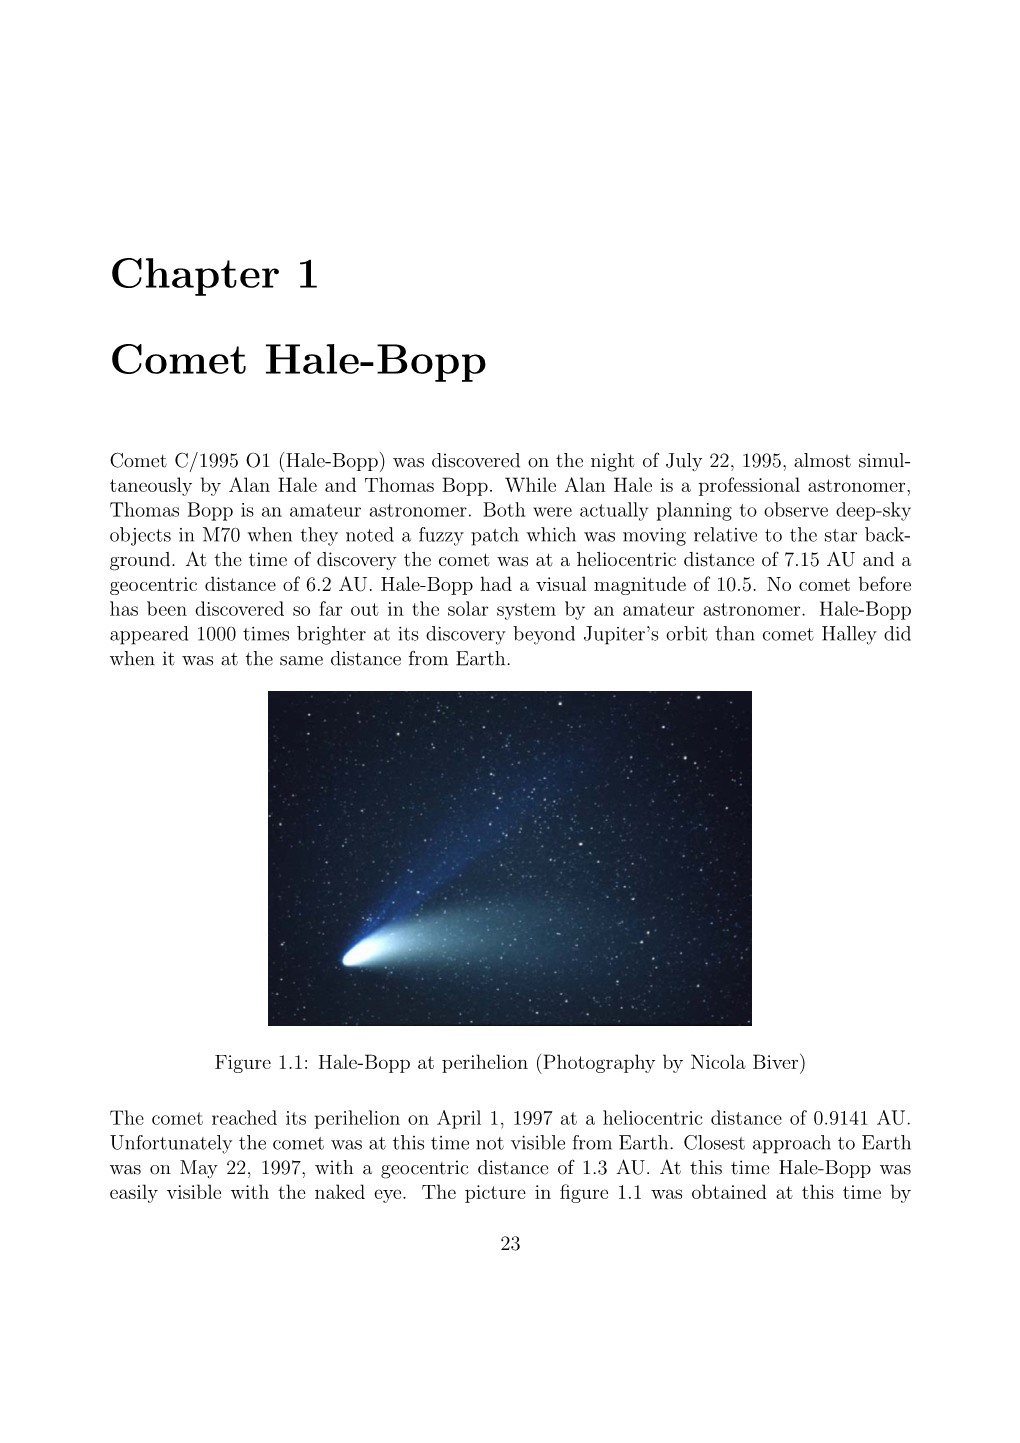 Chapter 1 Comet Hale-Bopp